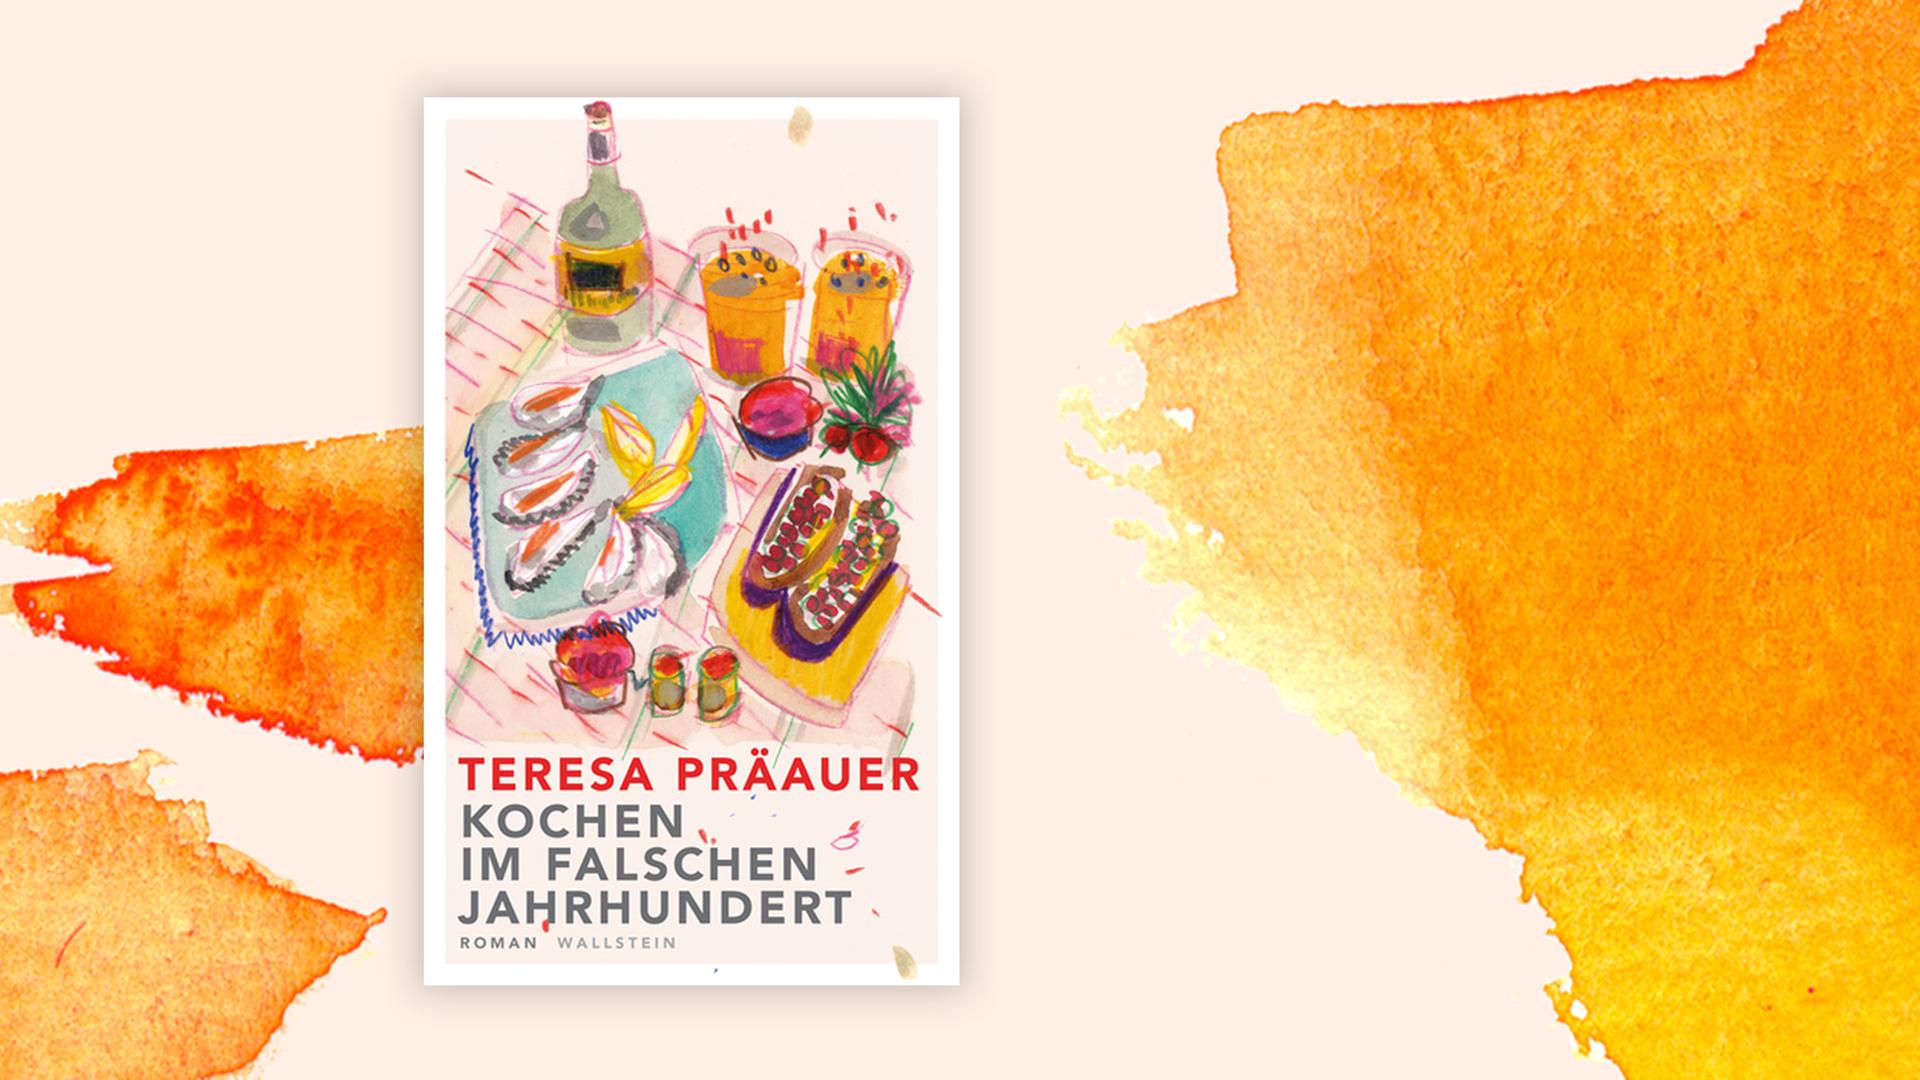 Das Buchcover "Kochen im falschen Jahrhundert" von Teresa Präauer ist vor einem grafischen Hintergrund zu sehen.